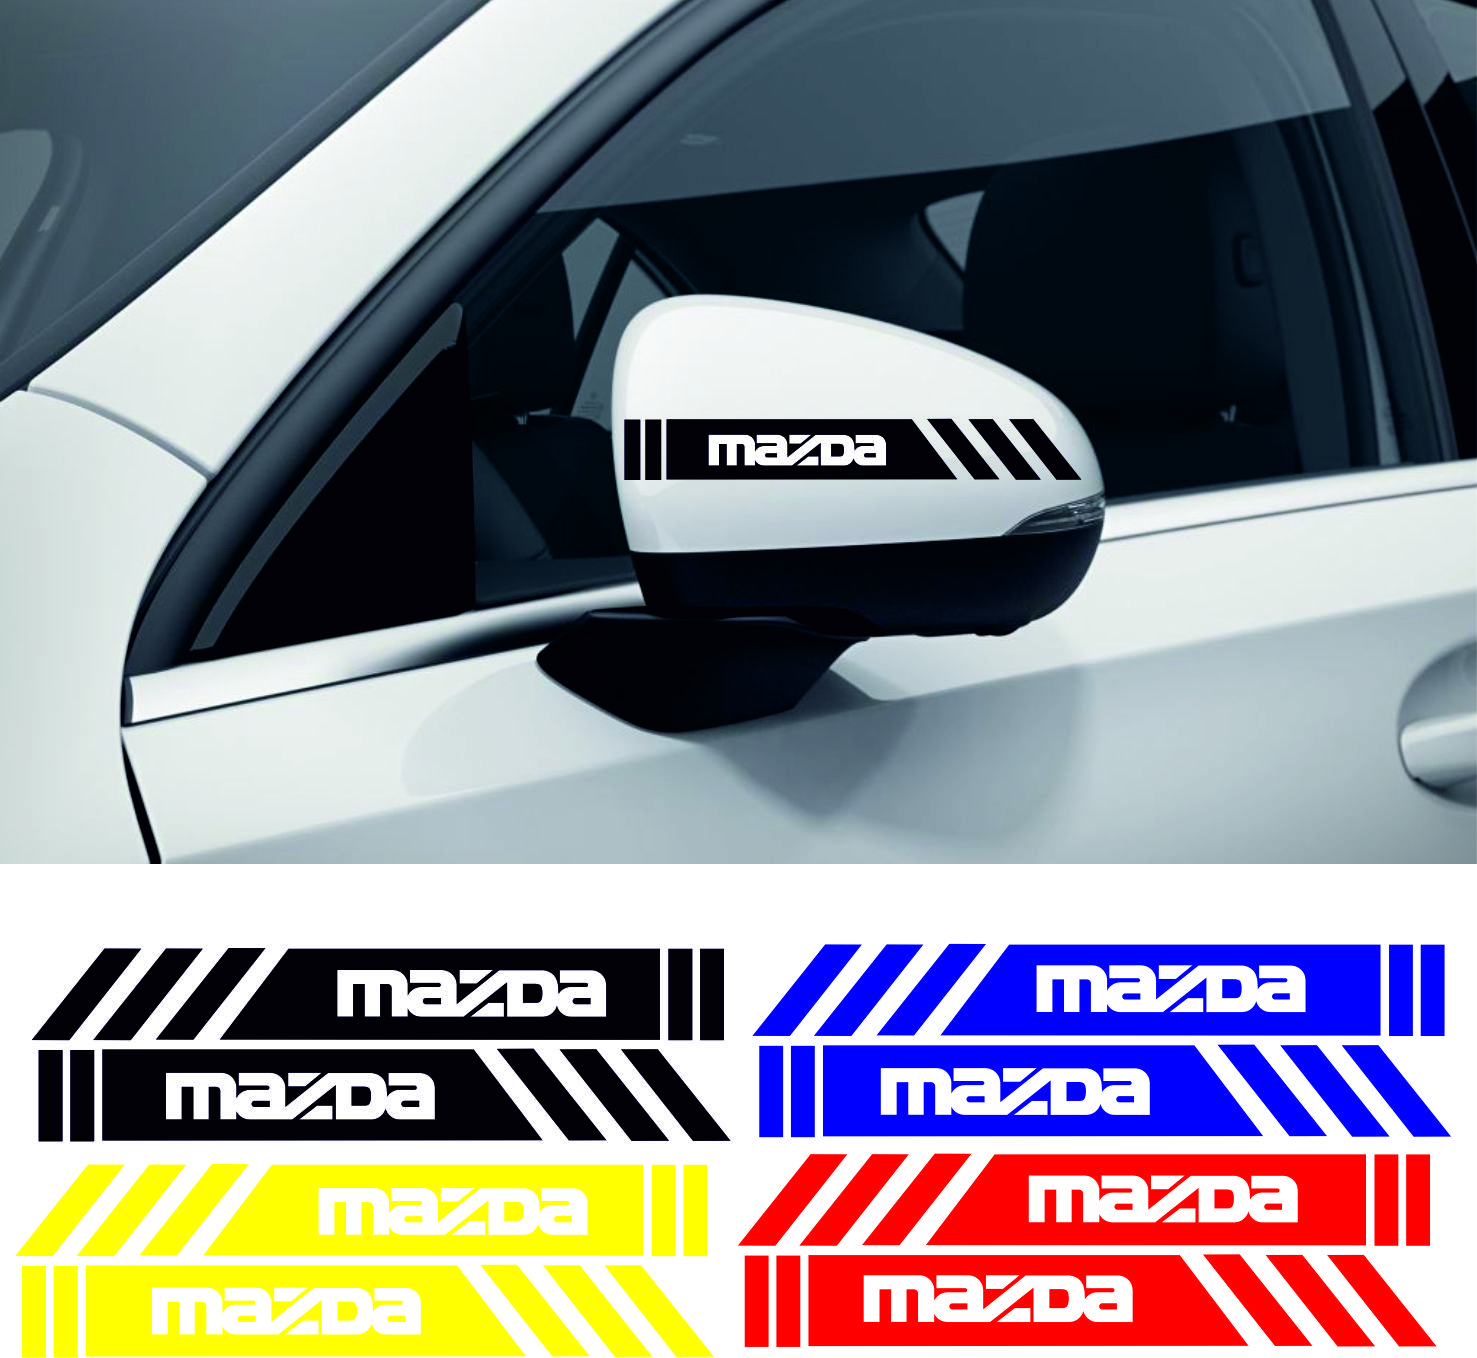 mazda sticker 2 - Mazda yan ayna şerit sticker